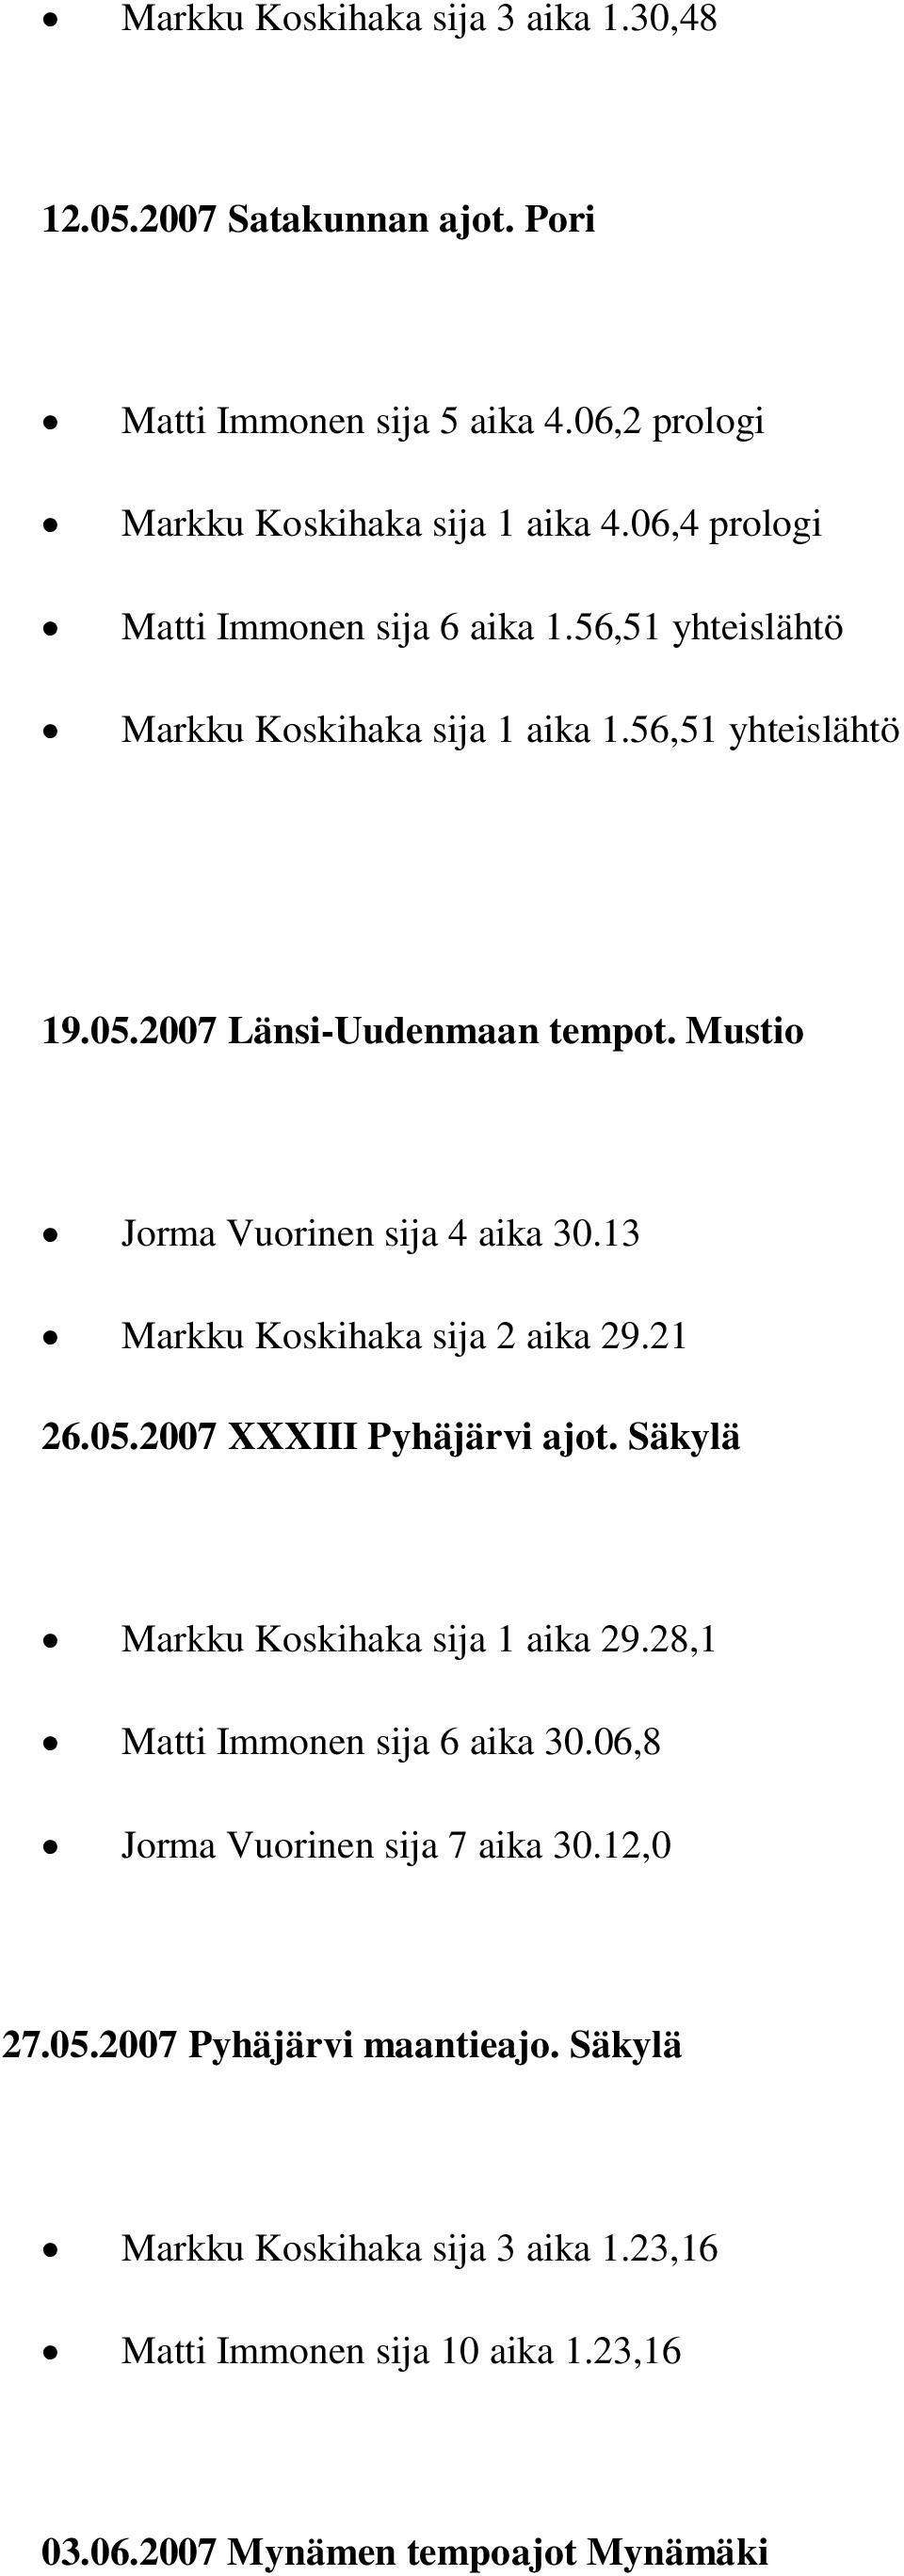 Mustio Jorma Vuorinen sija 4 aika 30.13 Markku Koskihaka sija 2 aika 29.21 26.05.2007 XXXIII Pyhäjärvi ajot. Säkylä Markku Koskihaka sija 1 aika 29.